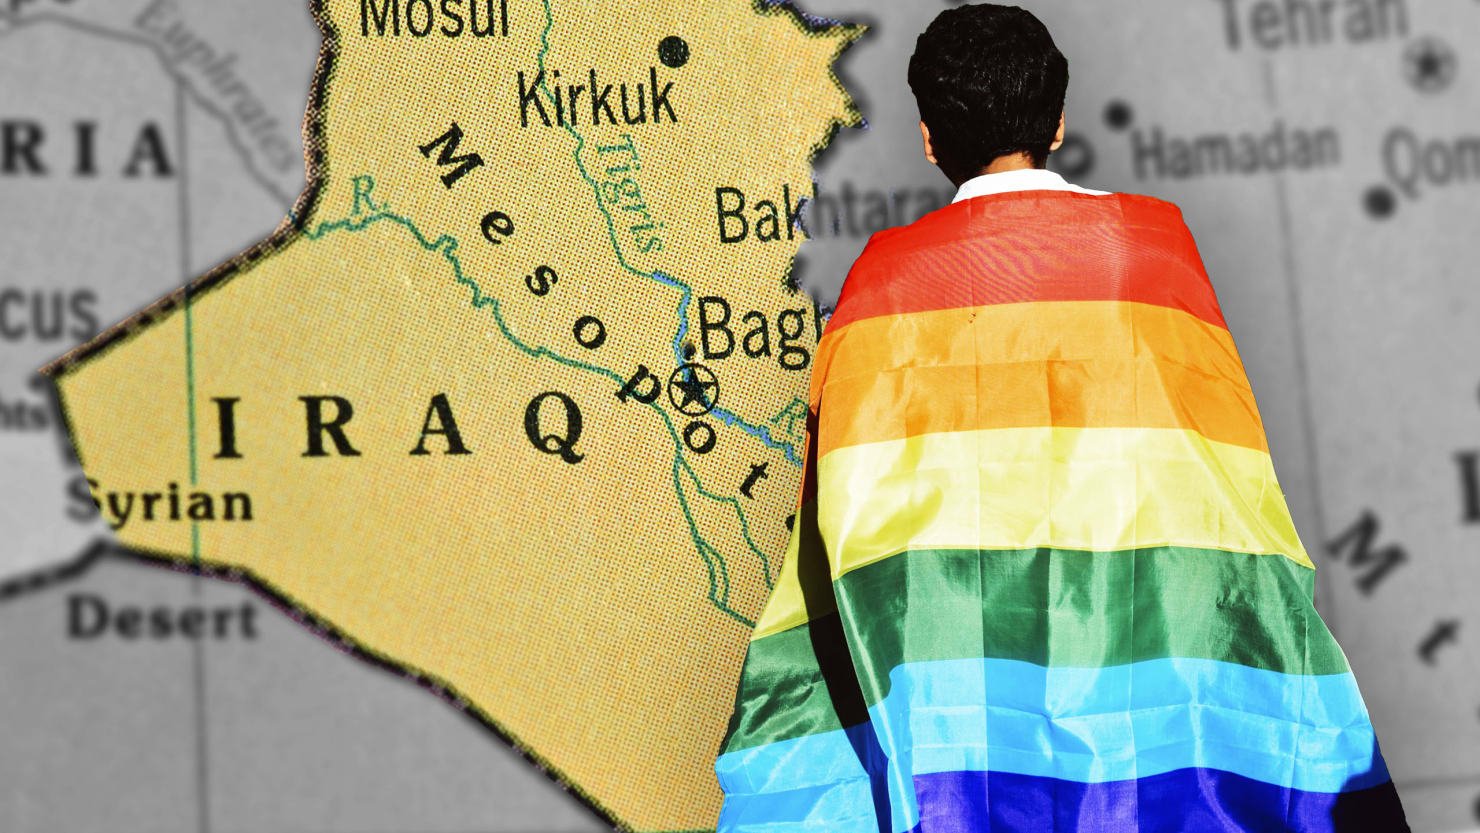  Parlamentul irakian examinează pedepsirea relaţiilor homosexuale cu pedeapsa cu moartea